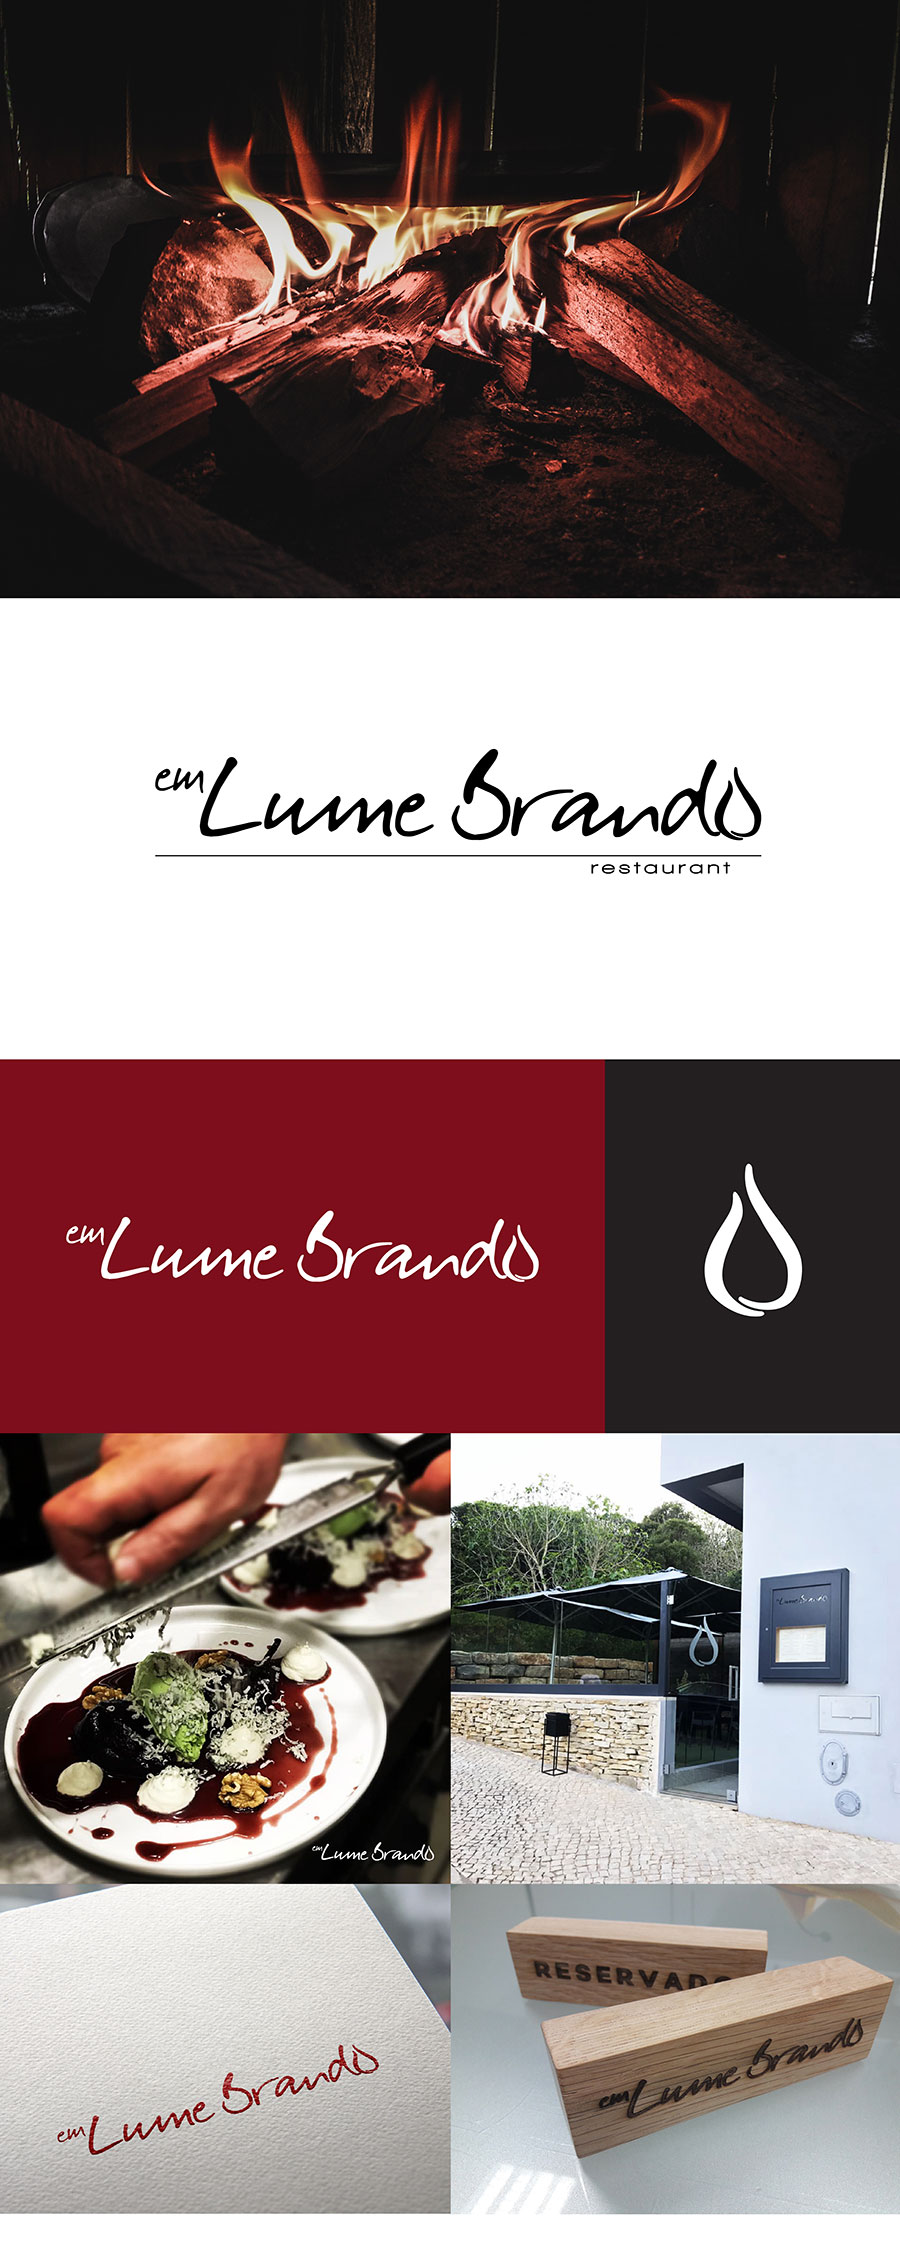 Identidade em Lume Brando realizado pela Proeasy design